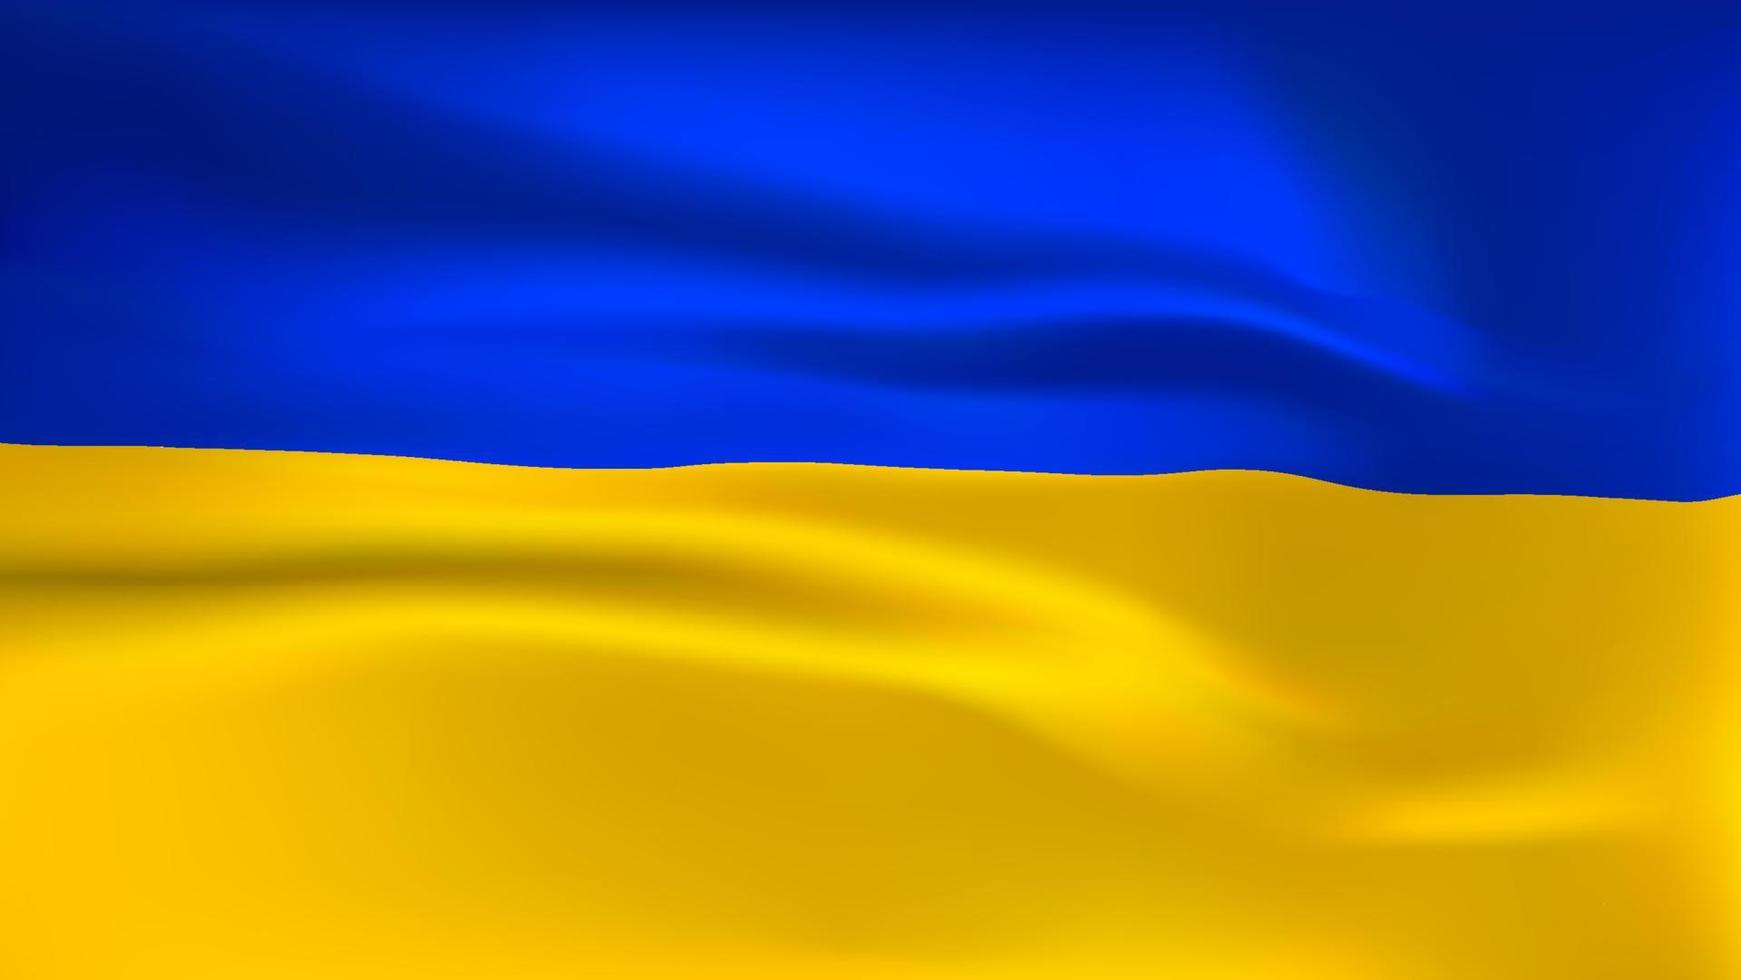 blau-gelbe ukrainische flagge mit stoppkrieg in ukrainischer schrift. russische aggression gegen die ukraine stoppen. vektor